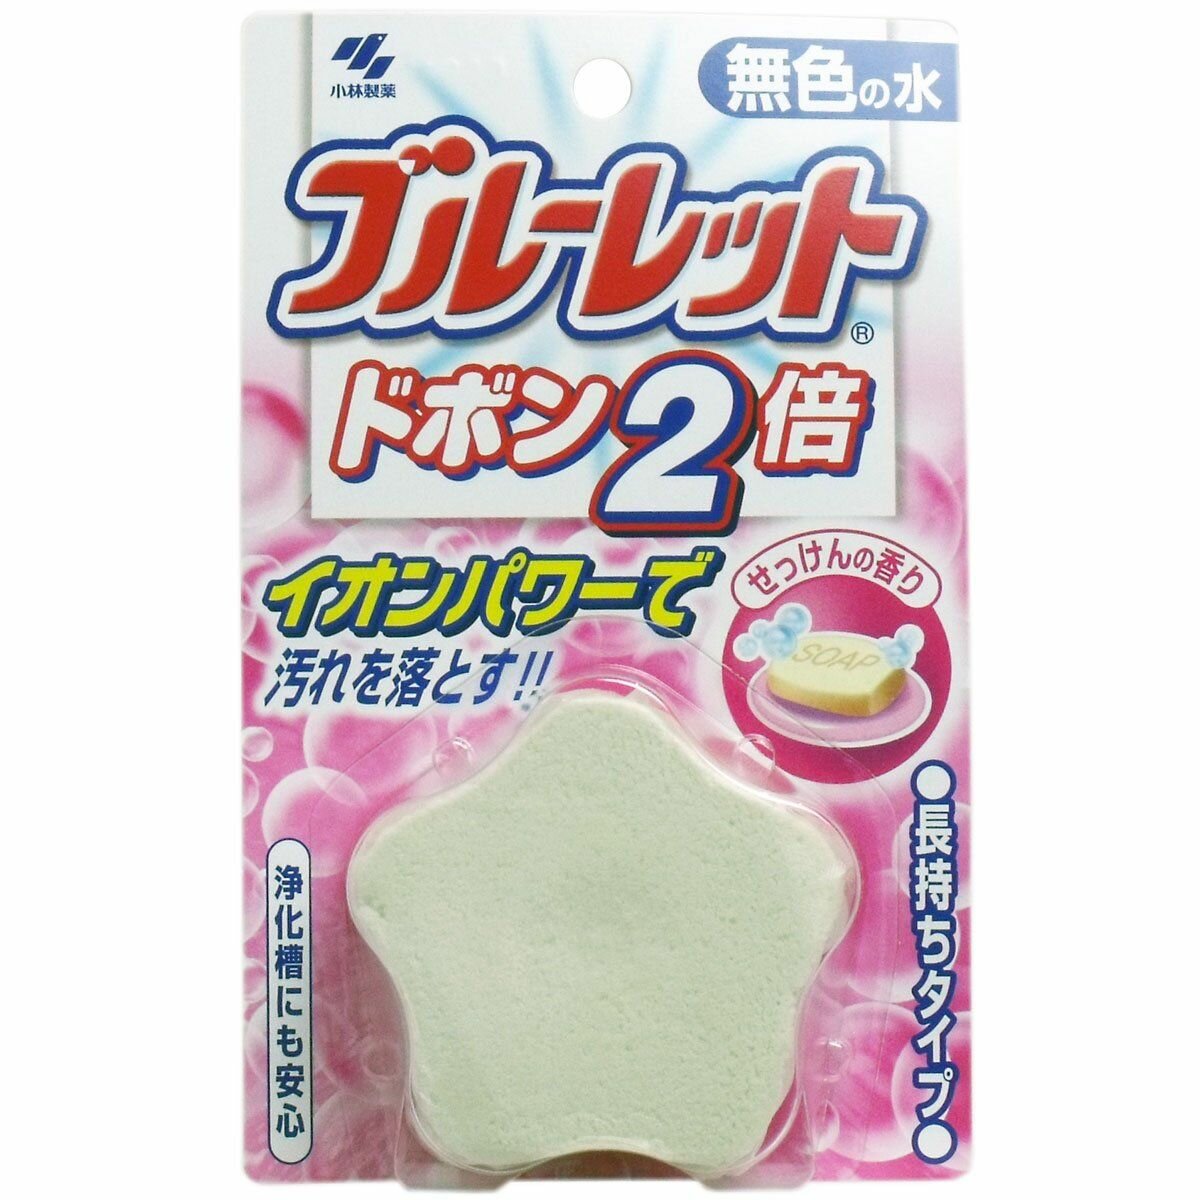 "Kobayashi" Очищающая таблетка для бачка с ароматом свежести 120гр